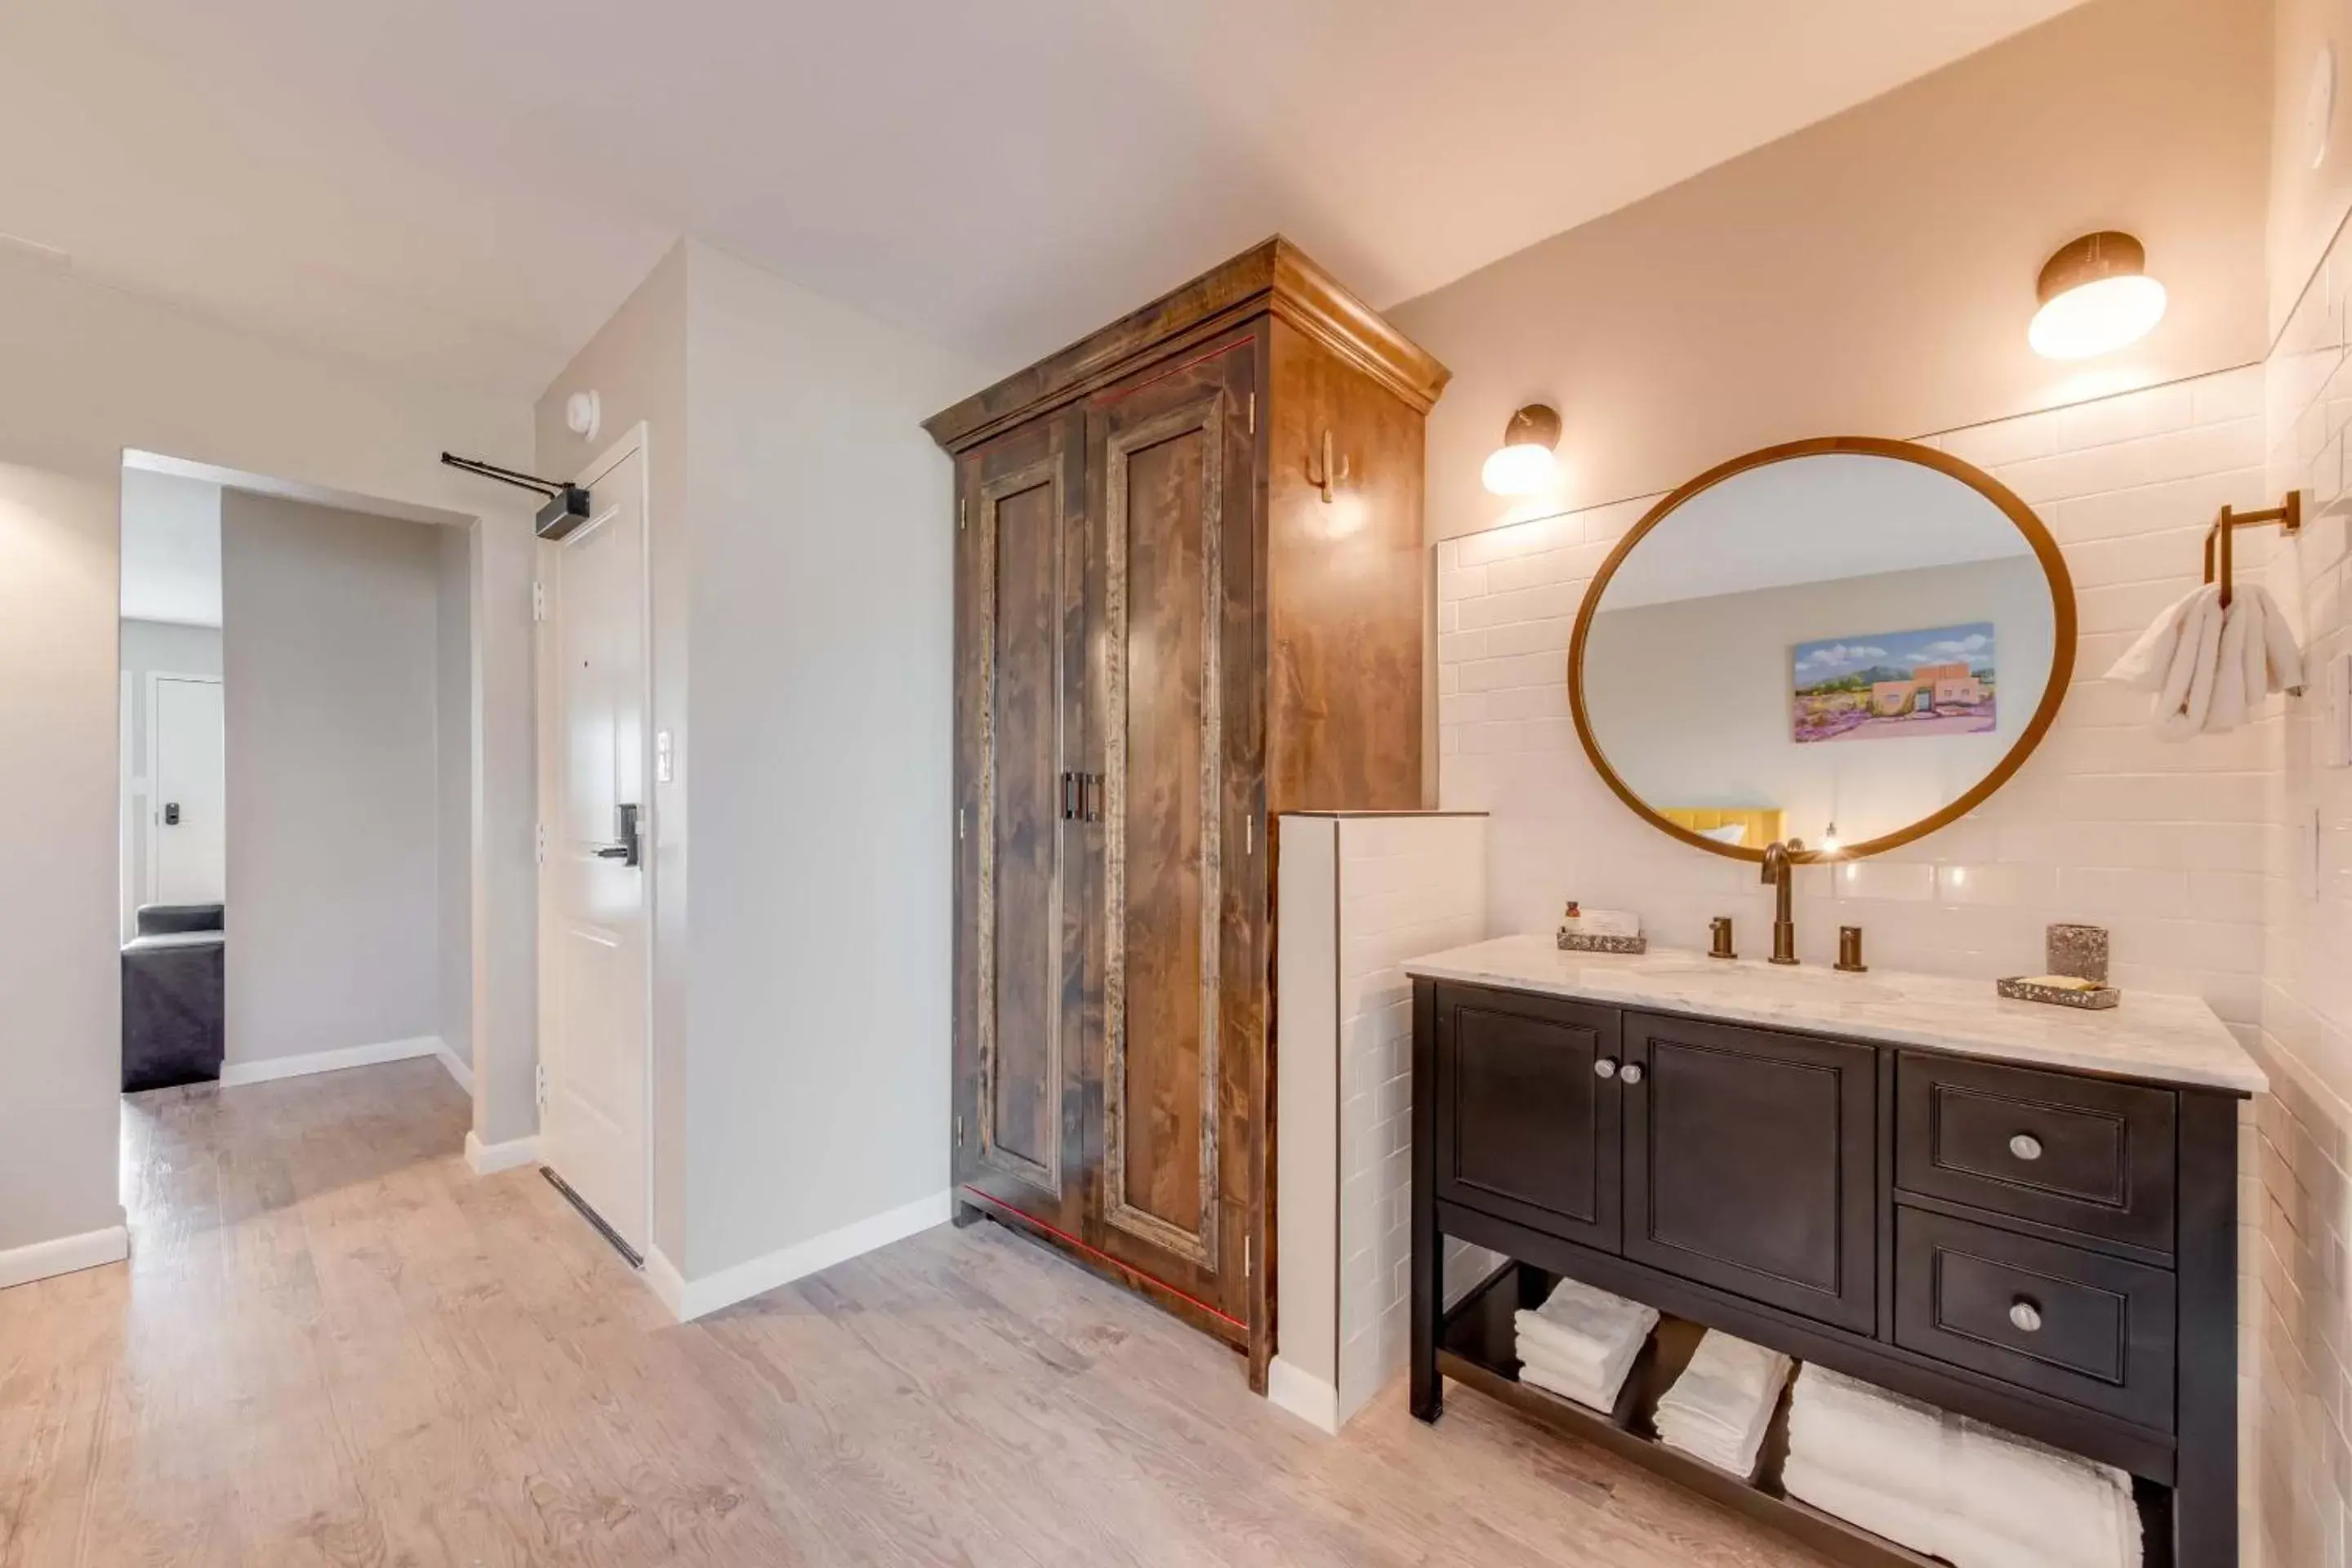 Bedroom, Bathroom in Taos Motor Lodge